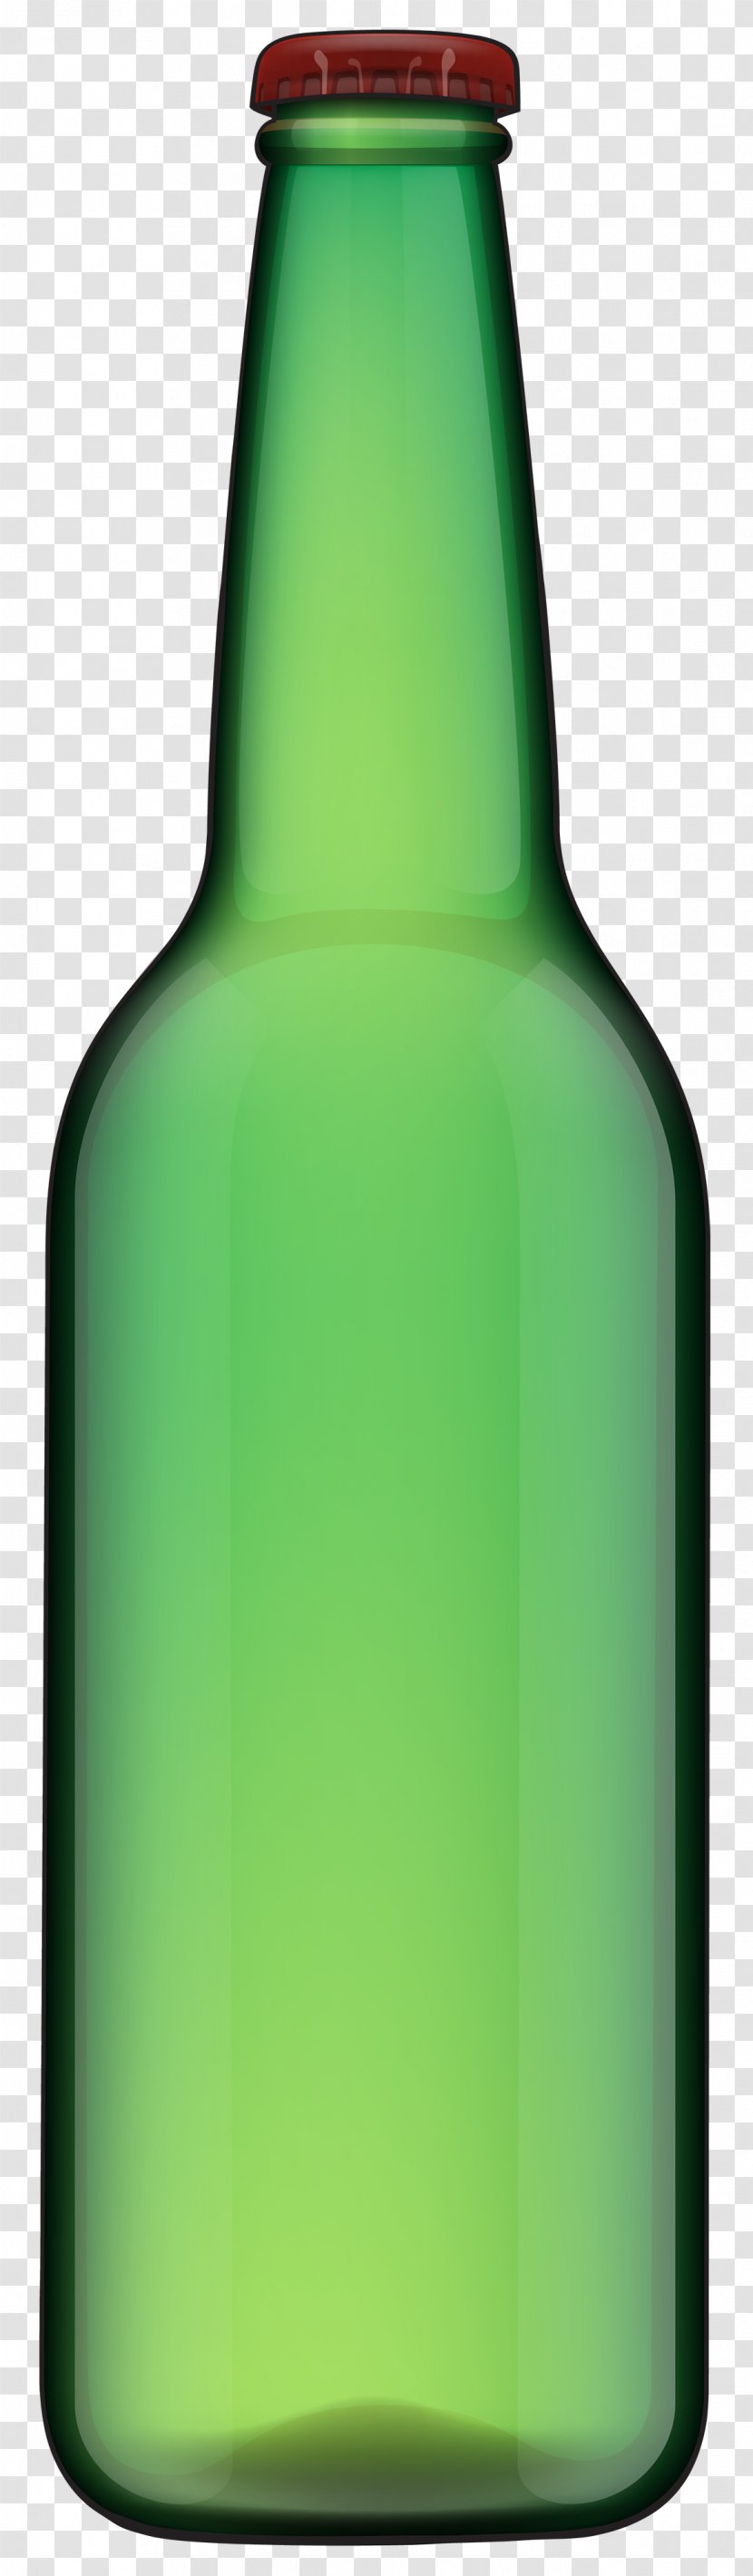 Beer Bottle Brown Ale Clip Art - Flower Transparent PNG